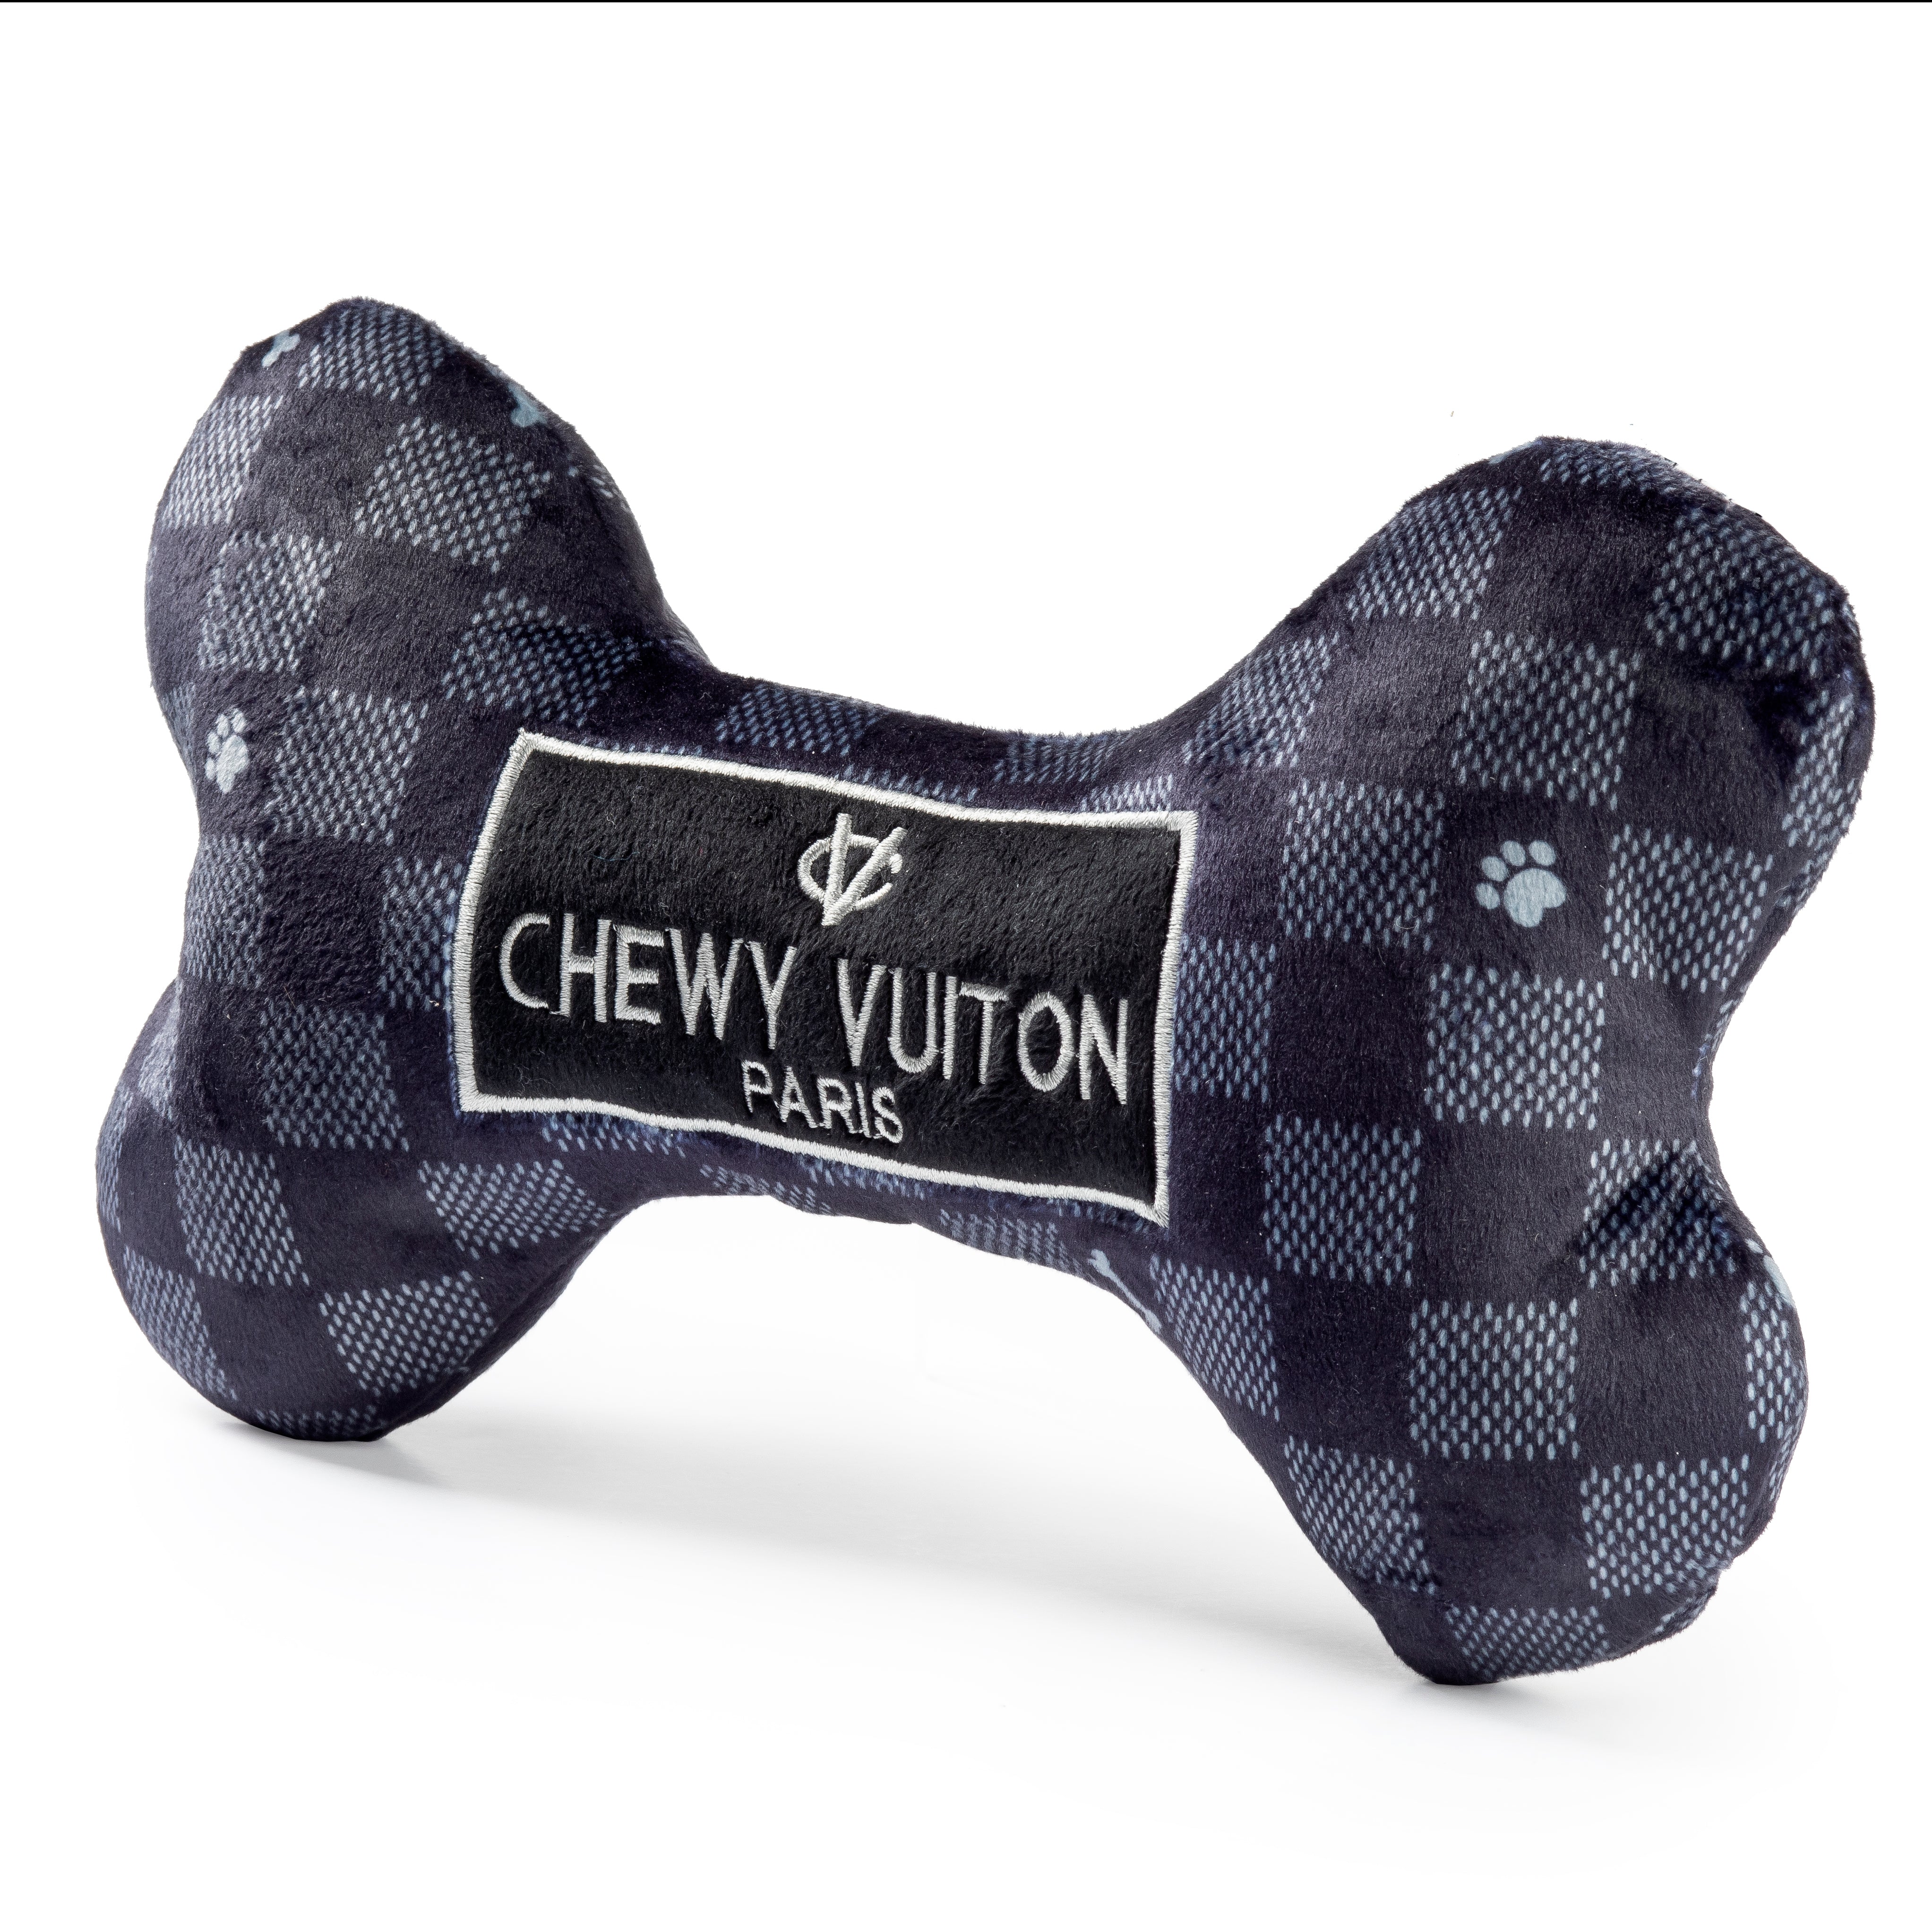 Chewy Vuitton Checker Bone - Fresh & Healthy Dog Food